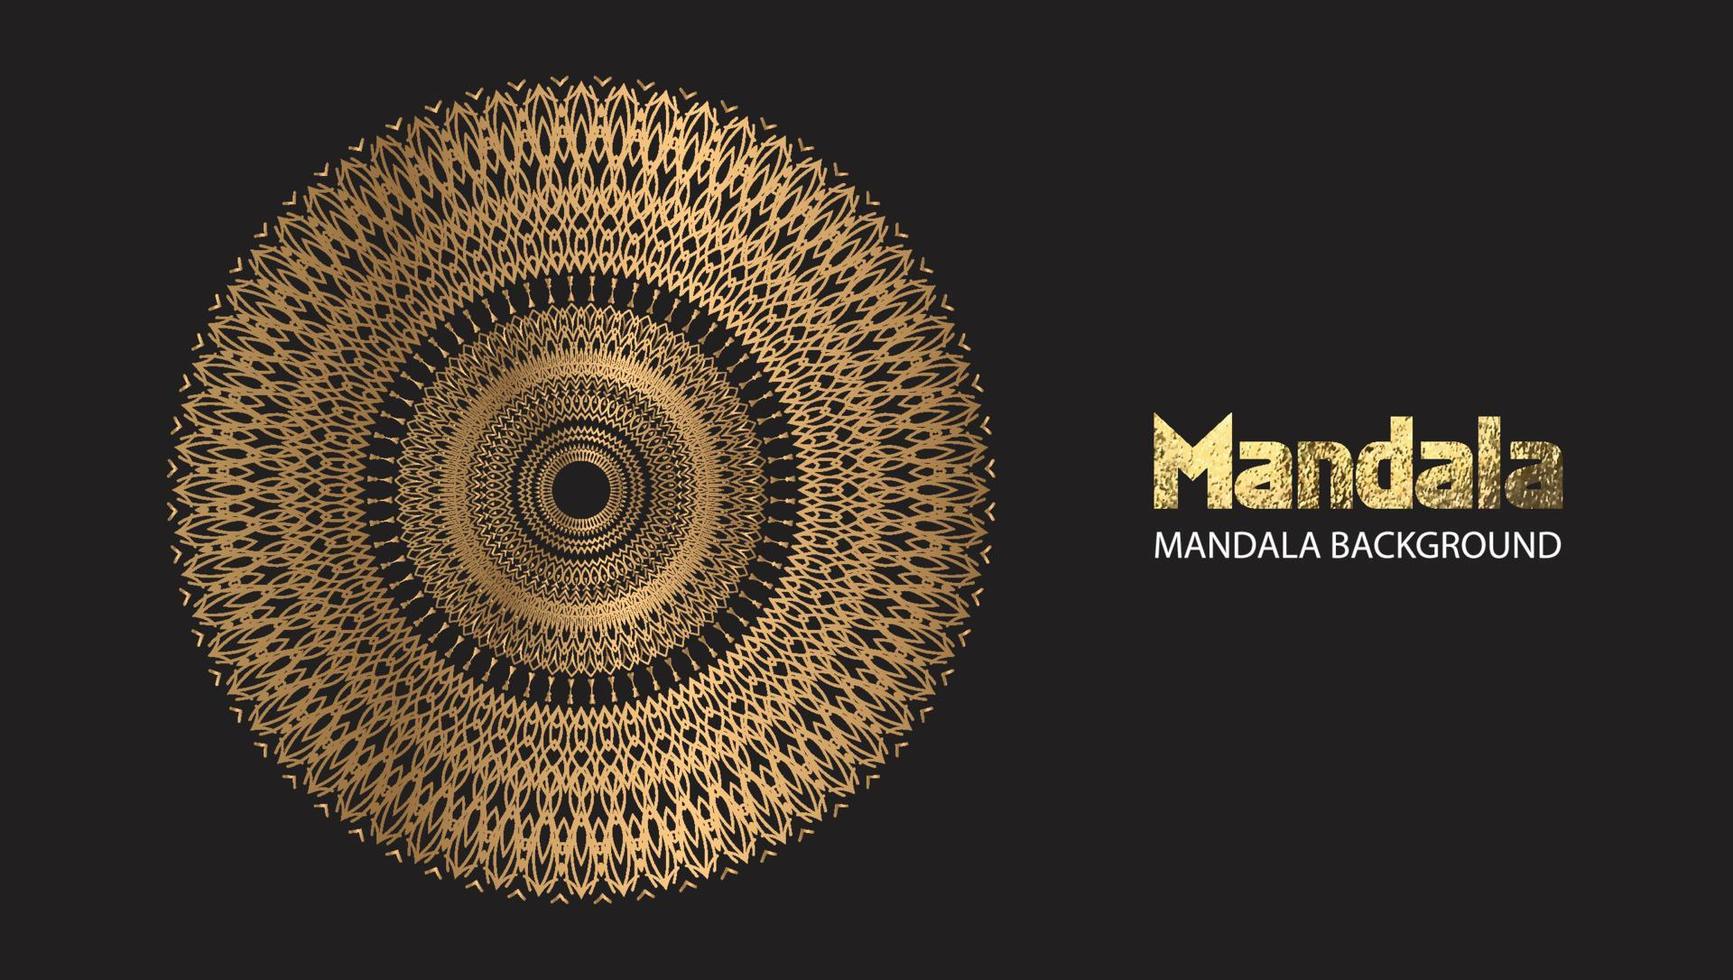 conception de mandala vecteur de mandala rond texte de brosse d'or de conception de luxe.